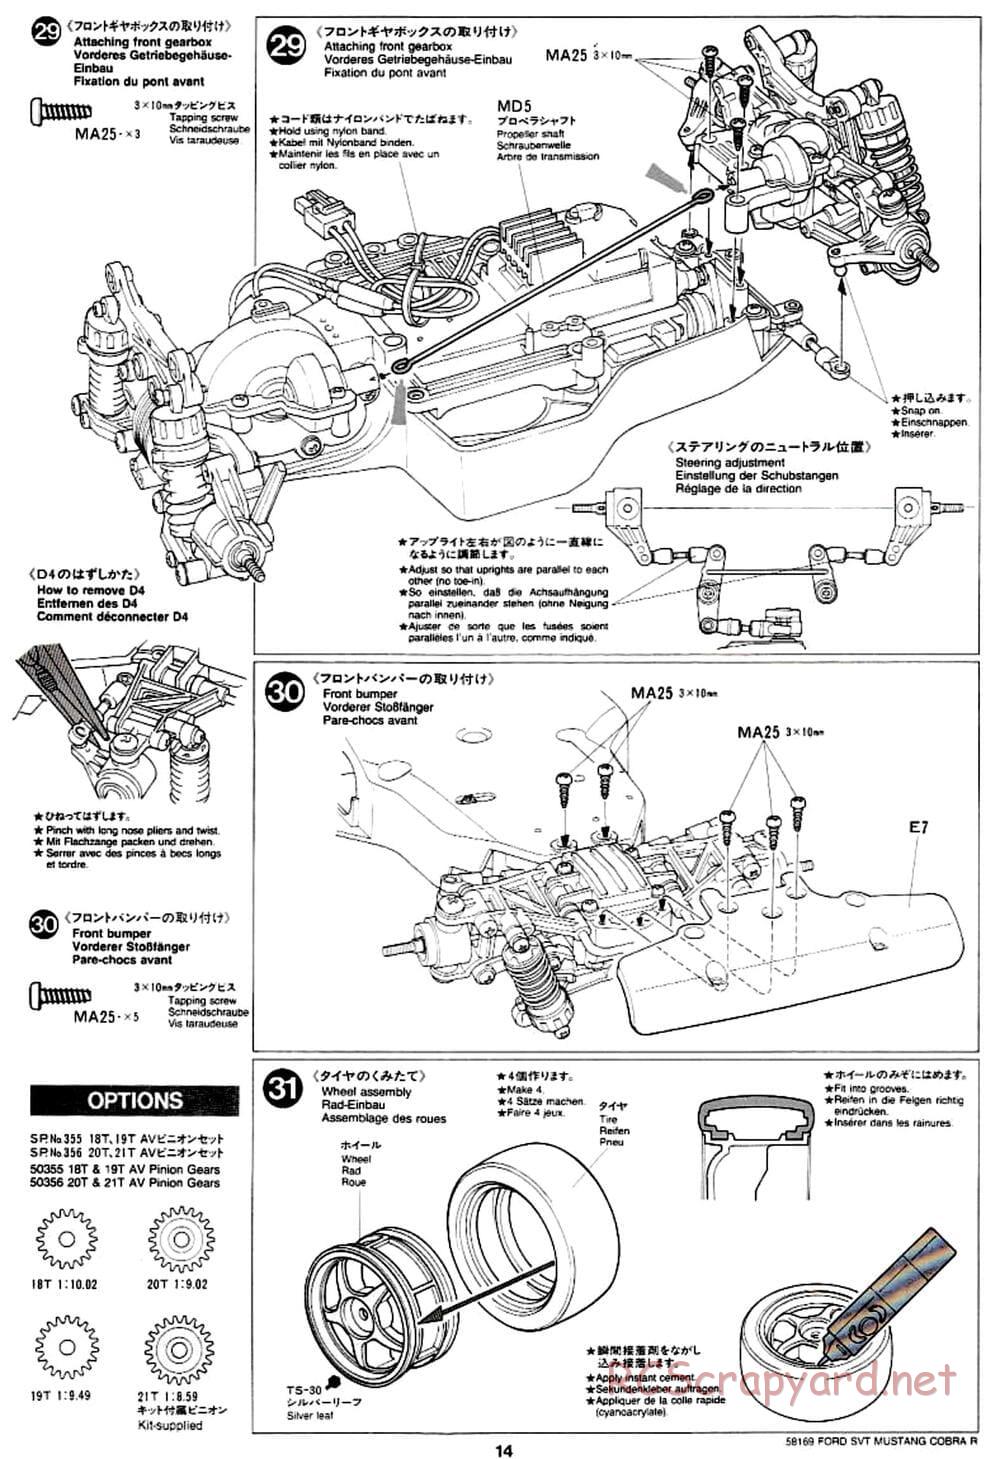 Tamiya - Ford SVT Mustang Cobra-R - TA-02 Chassis - Manual - Page 14